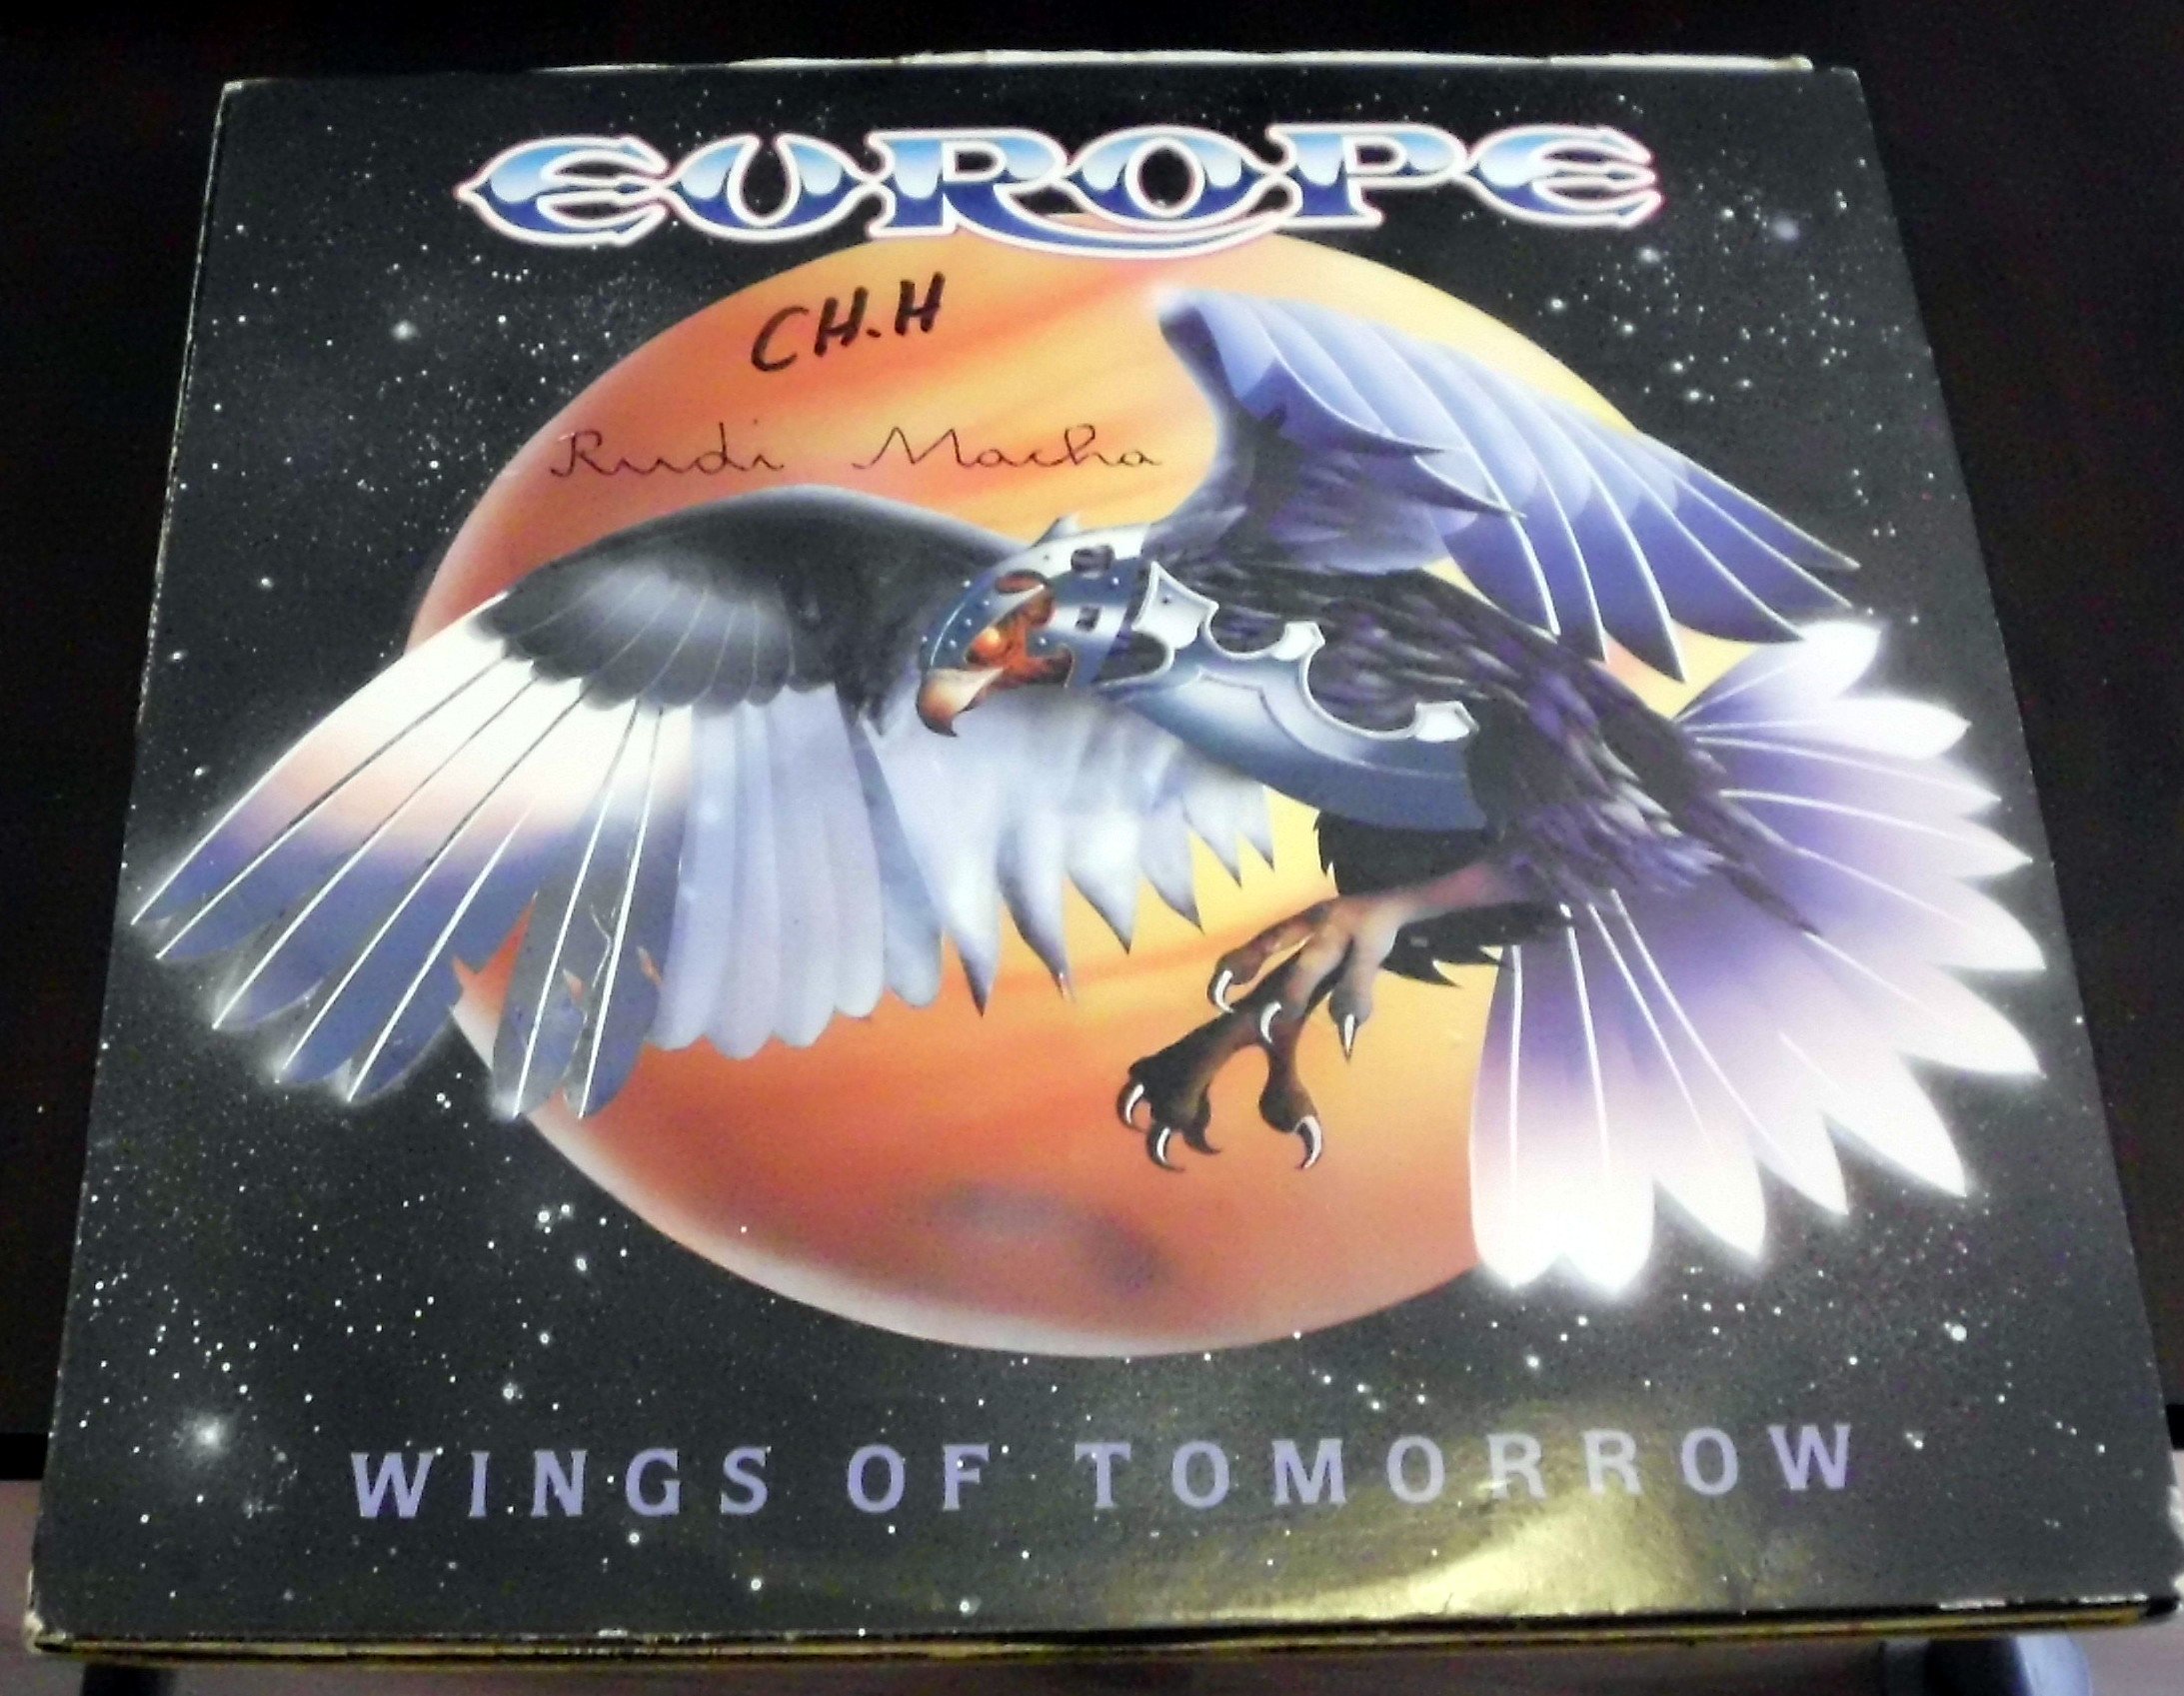 Wings of tomorrow (1984) [Vinyl LP]